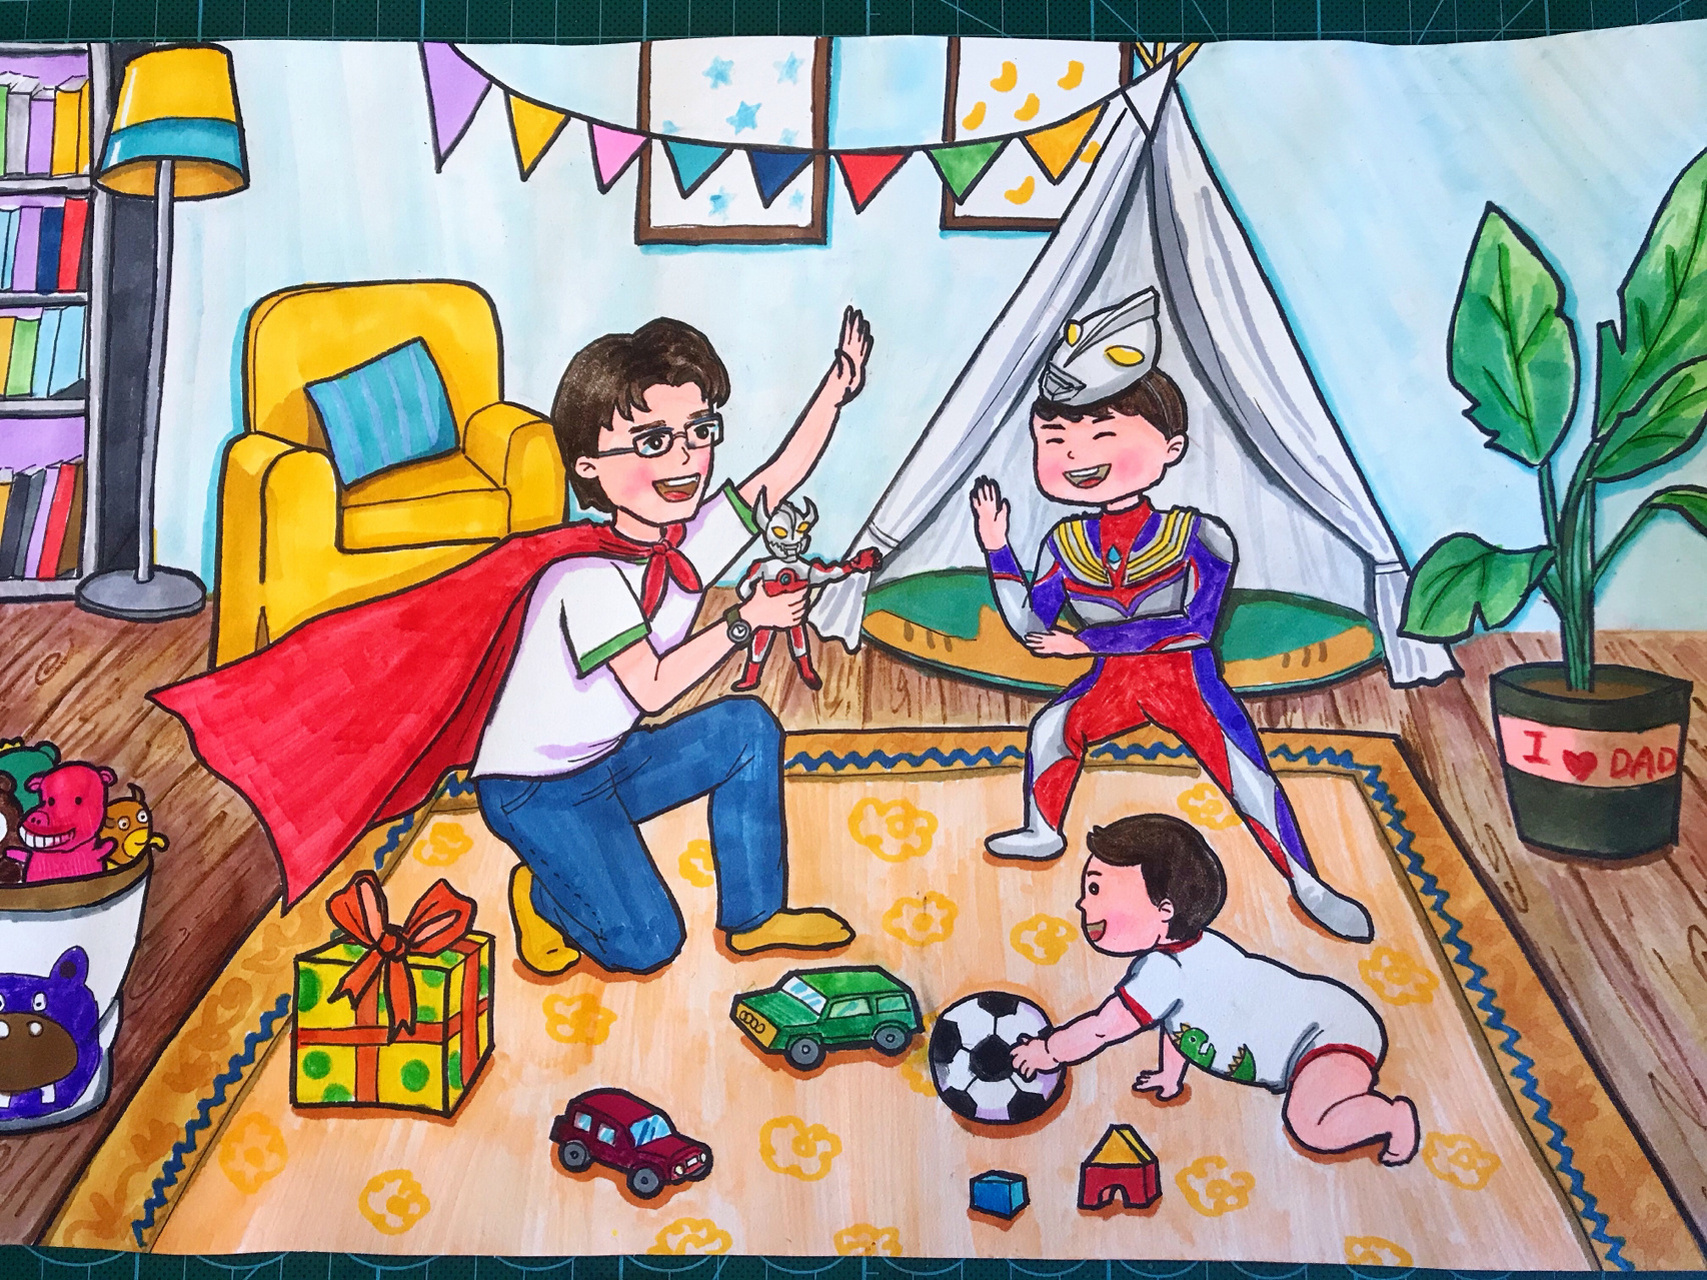 父亲节主题绘画 用画笔记录爸爸陪伴孩子做游戏的快乐时光